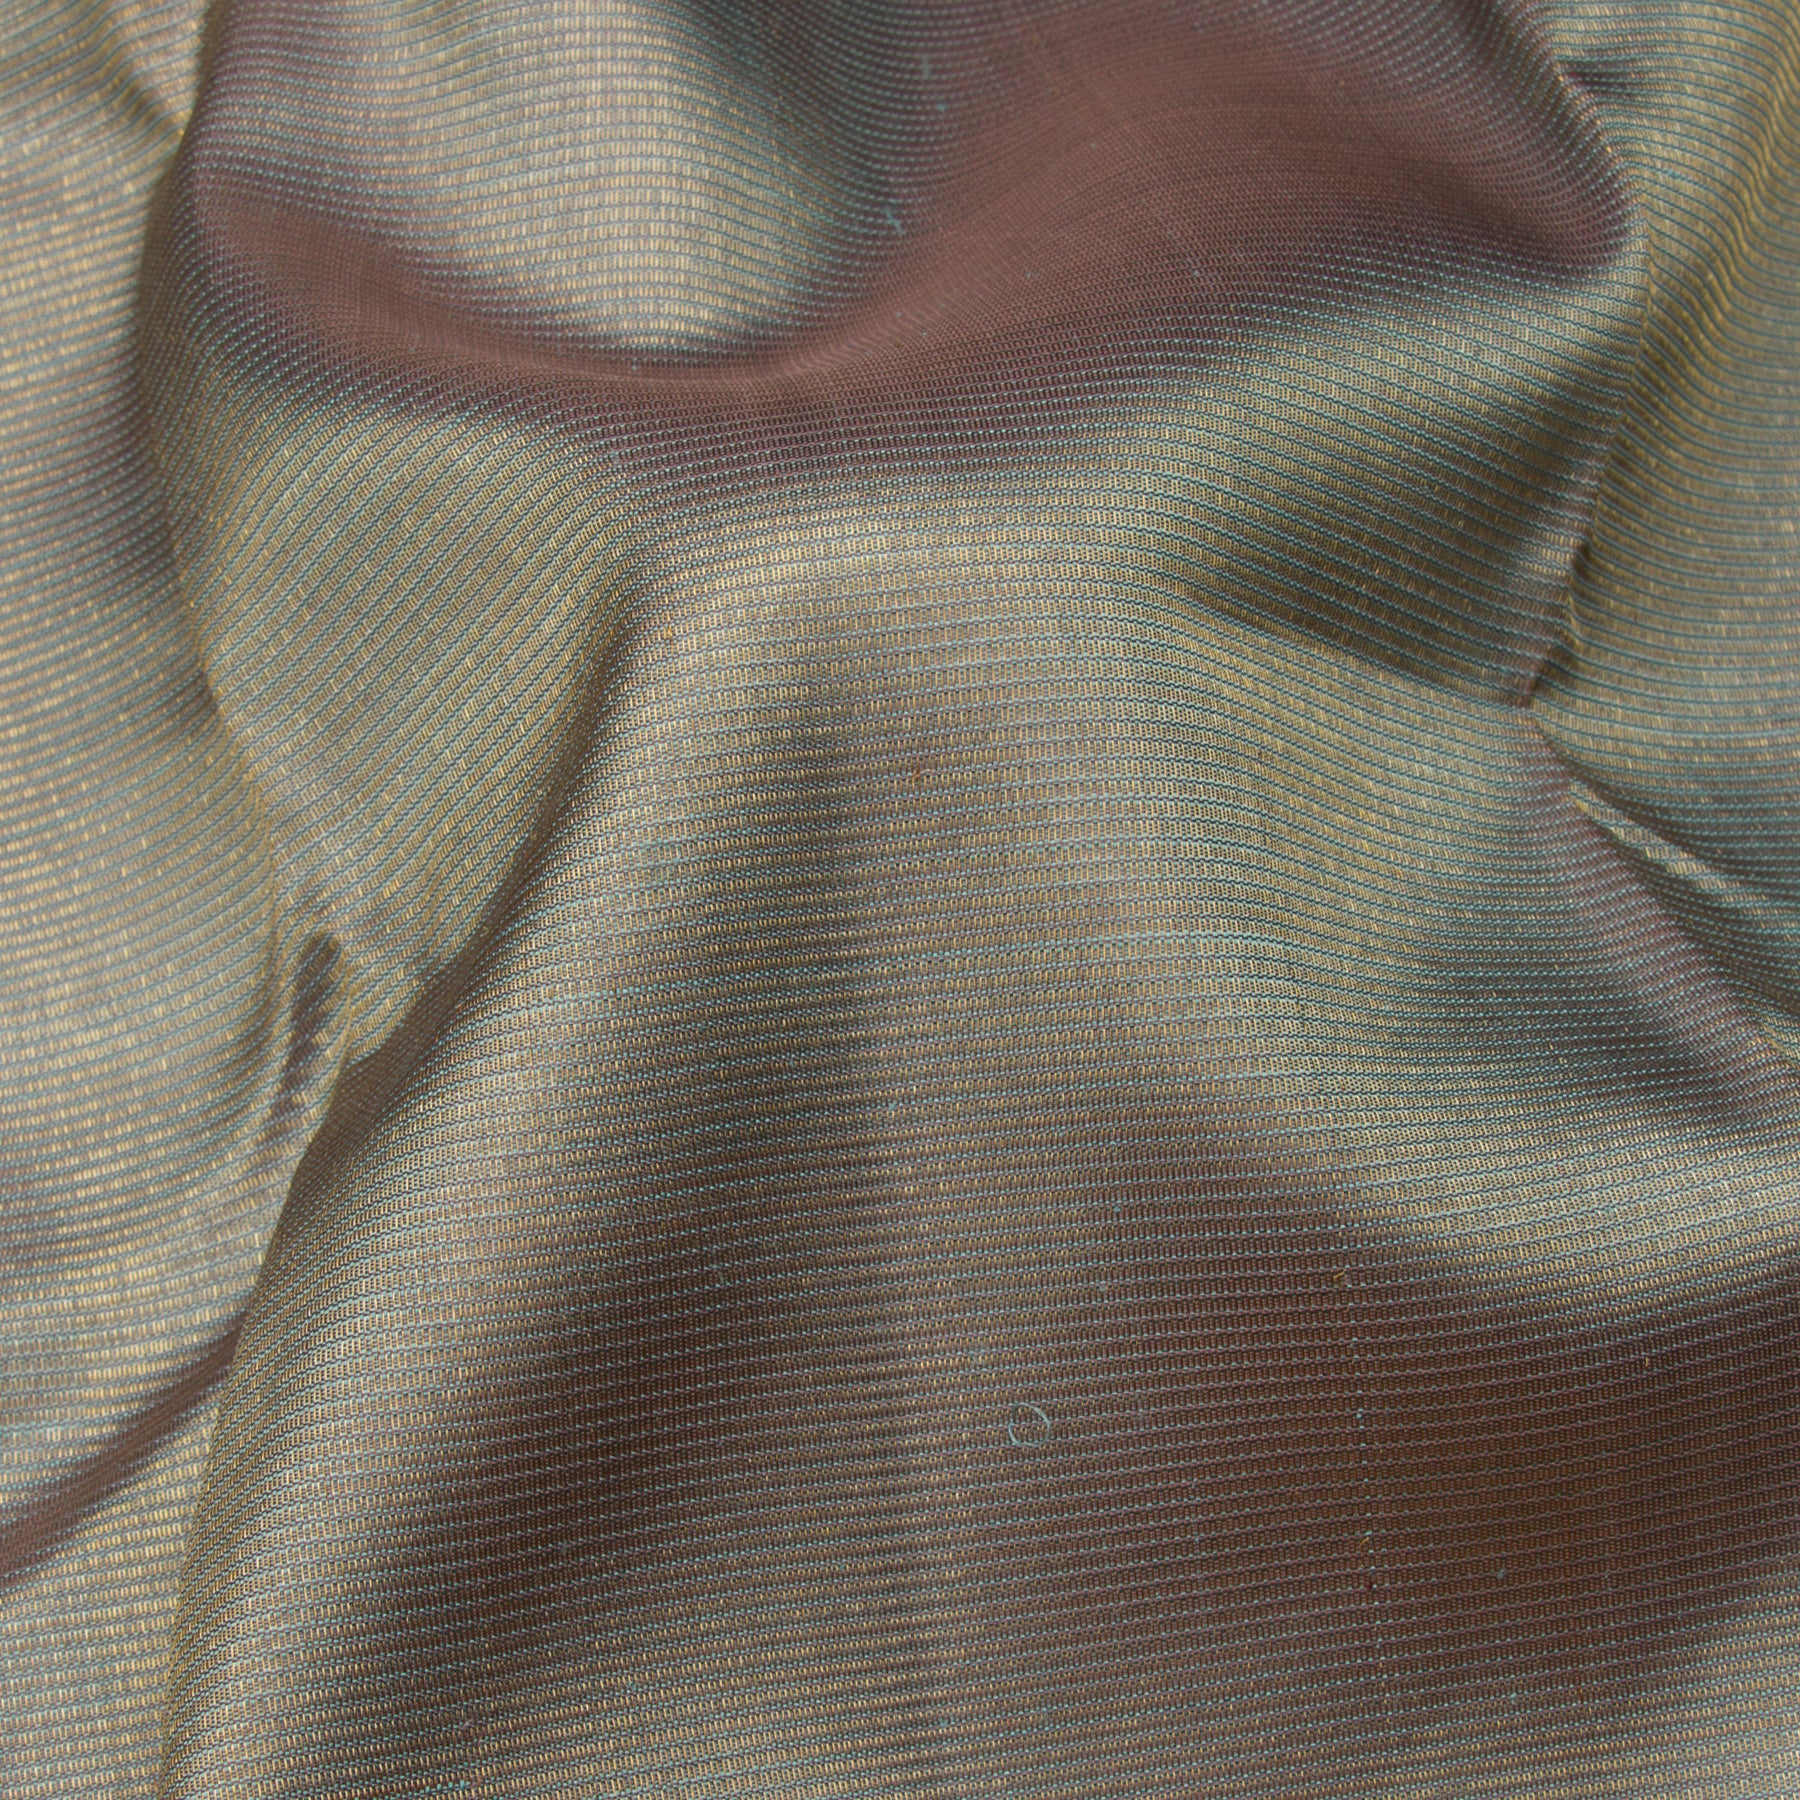 Kanakavalli Kanjivaram Silk Sari 23-599-HS001-09758 - Fabric View